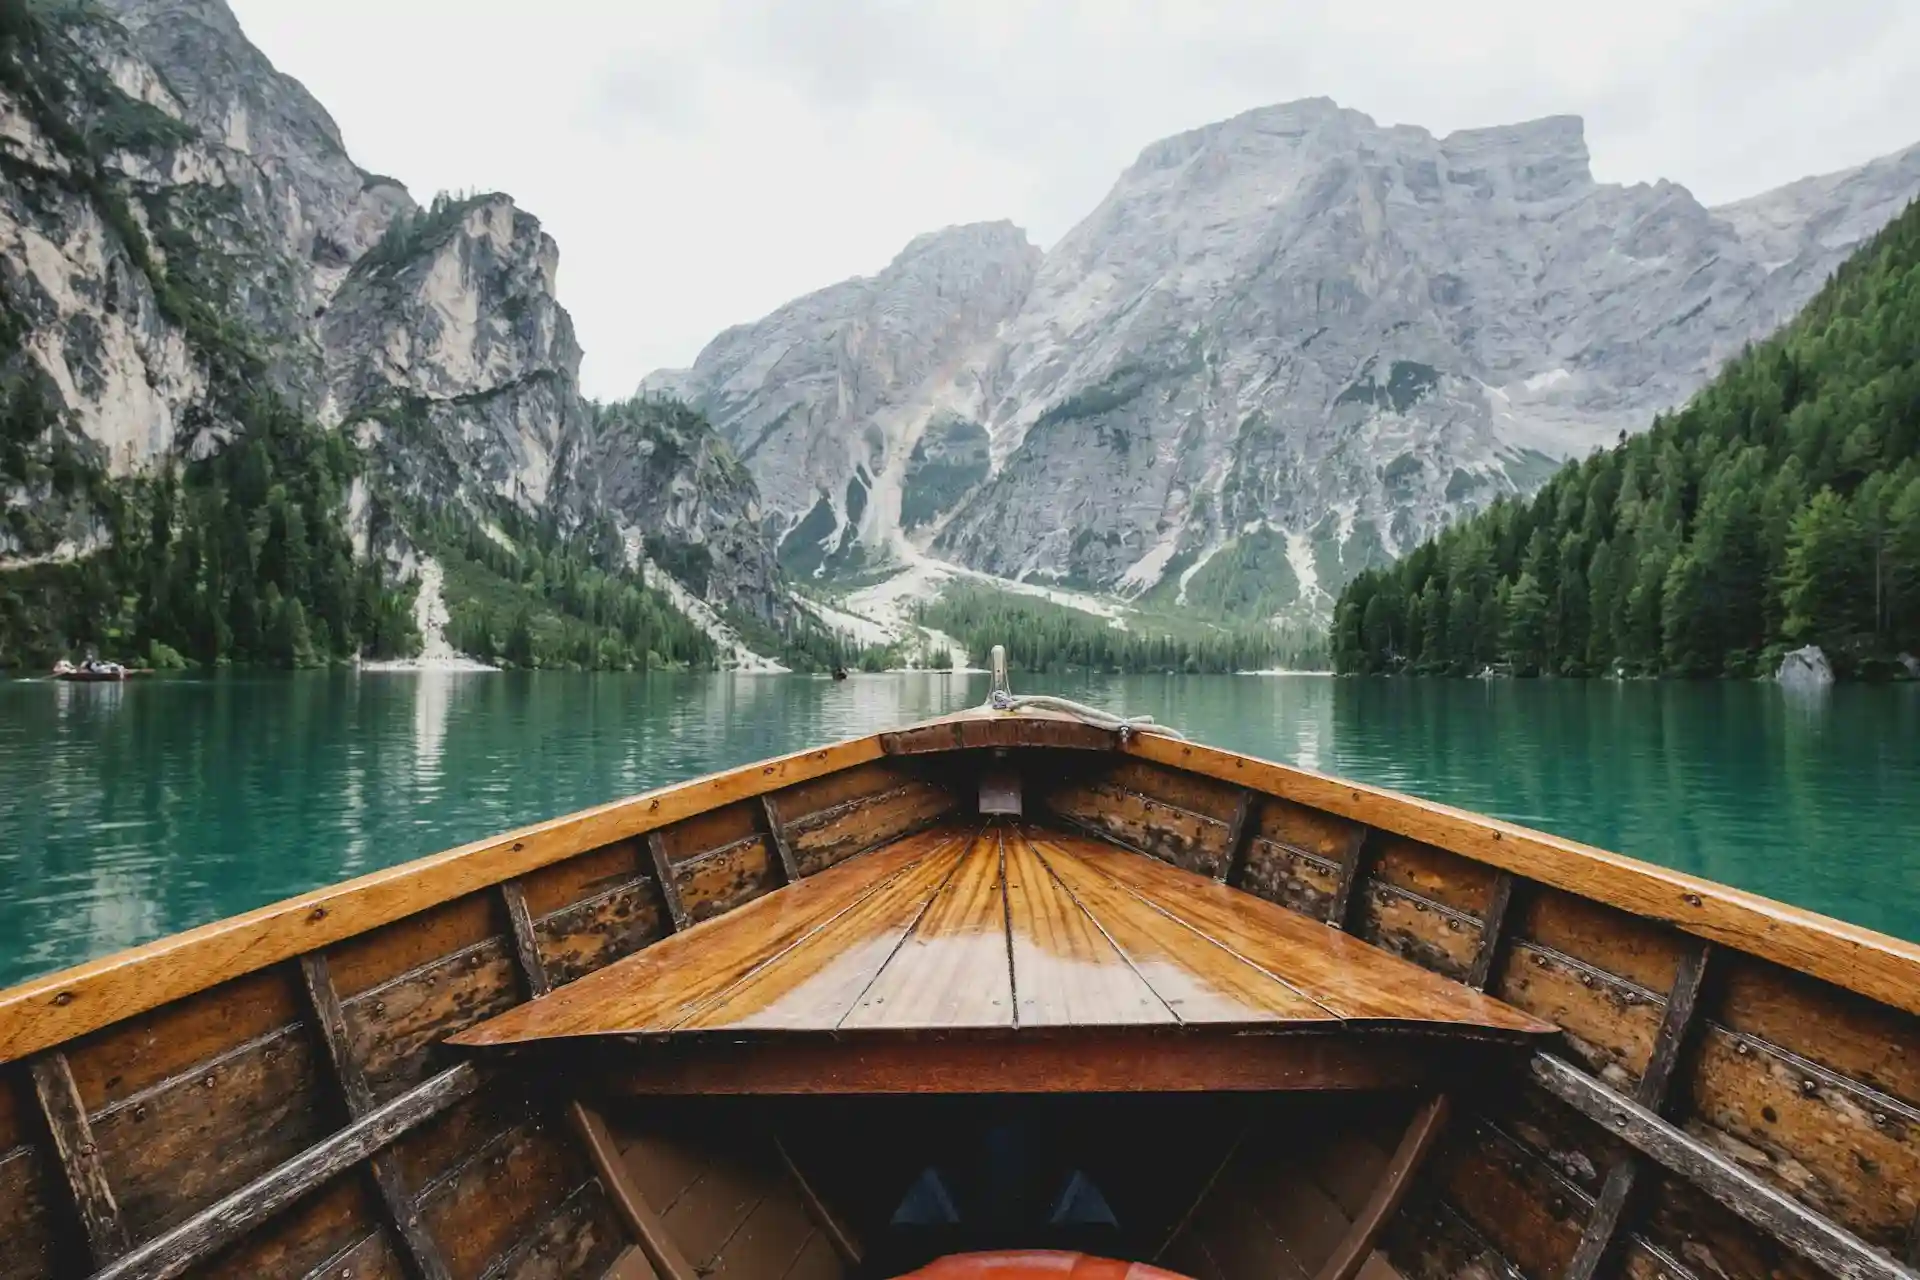 Лодка на озере с зеленой водой на фоне гор